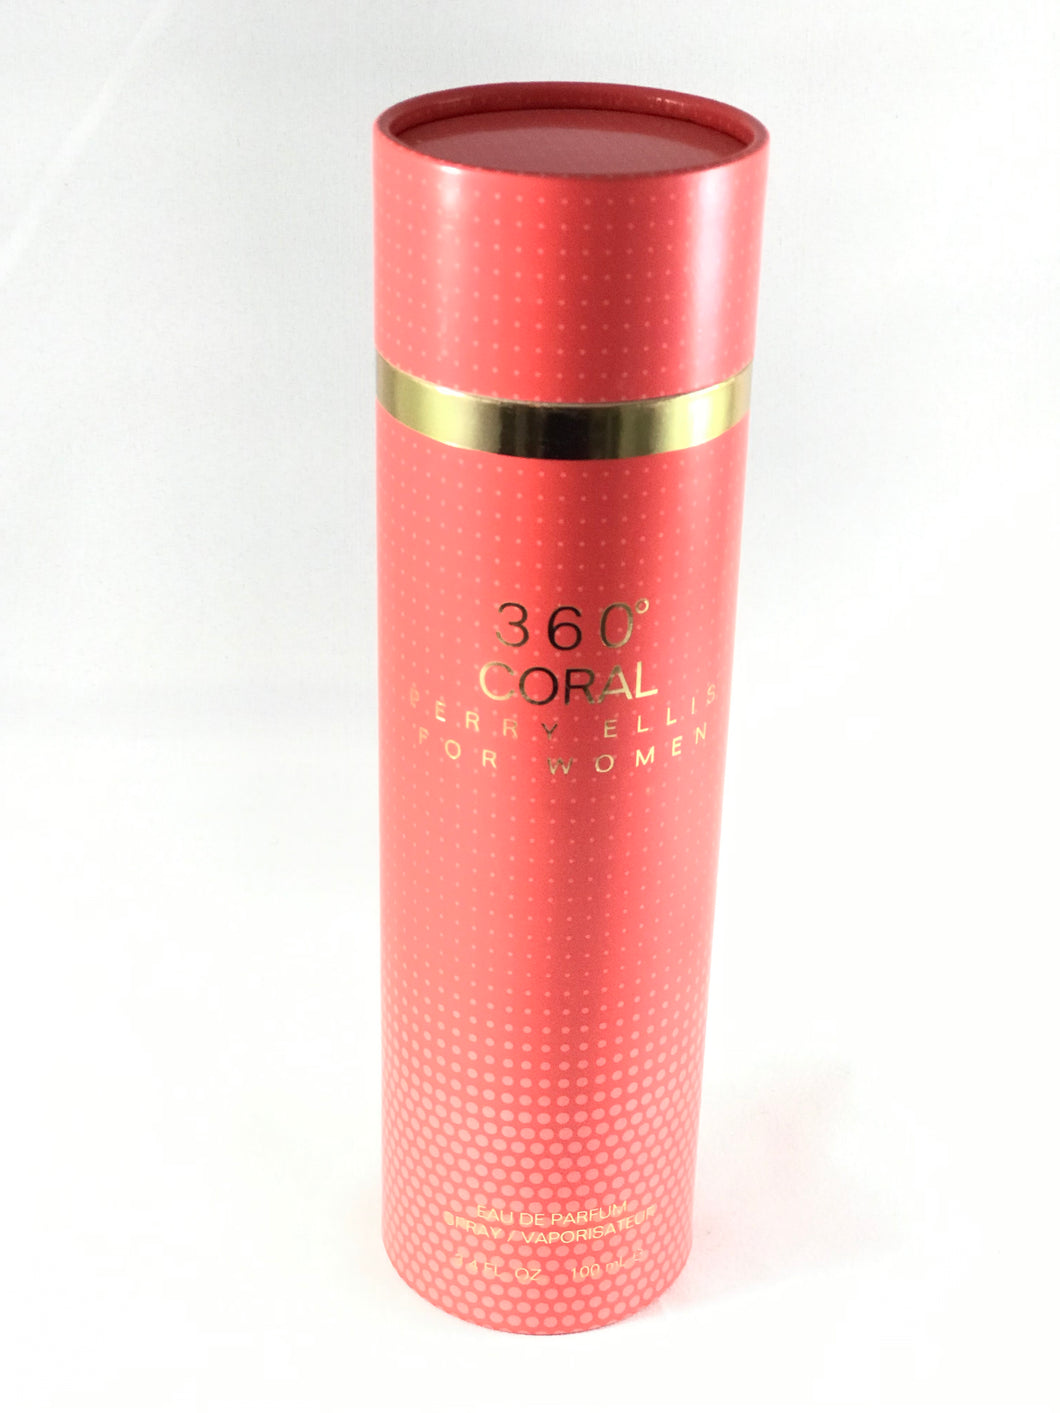 360  Coral Perris Ellis   for woman  Eau de Parfum 3.4oz 100ml - alwaysspecialgifts.com